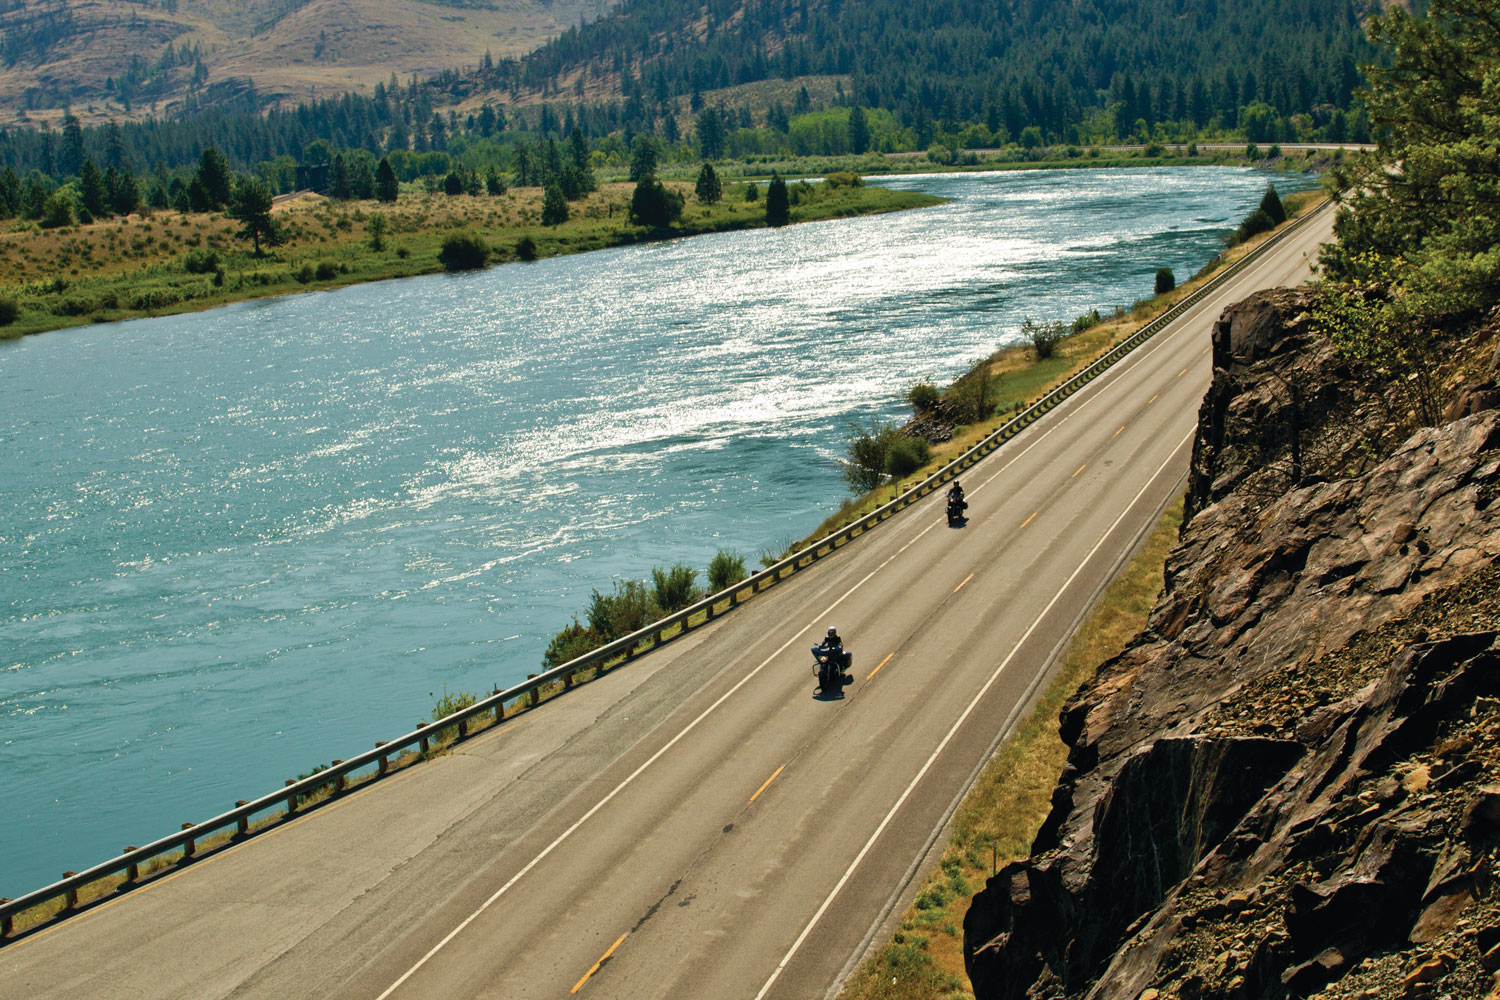 motorcycling along the blackfoot river